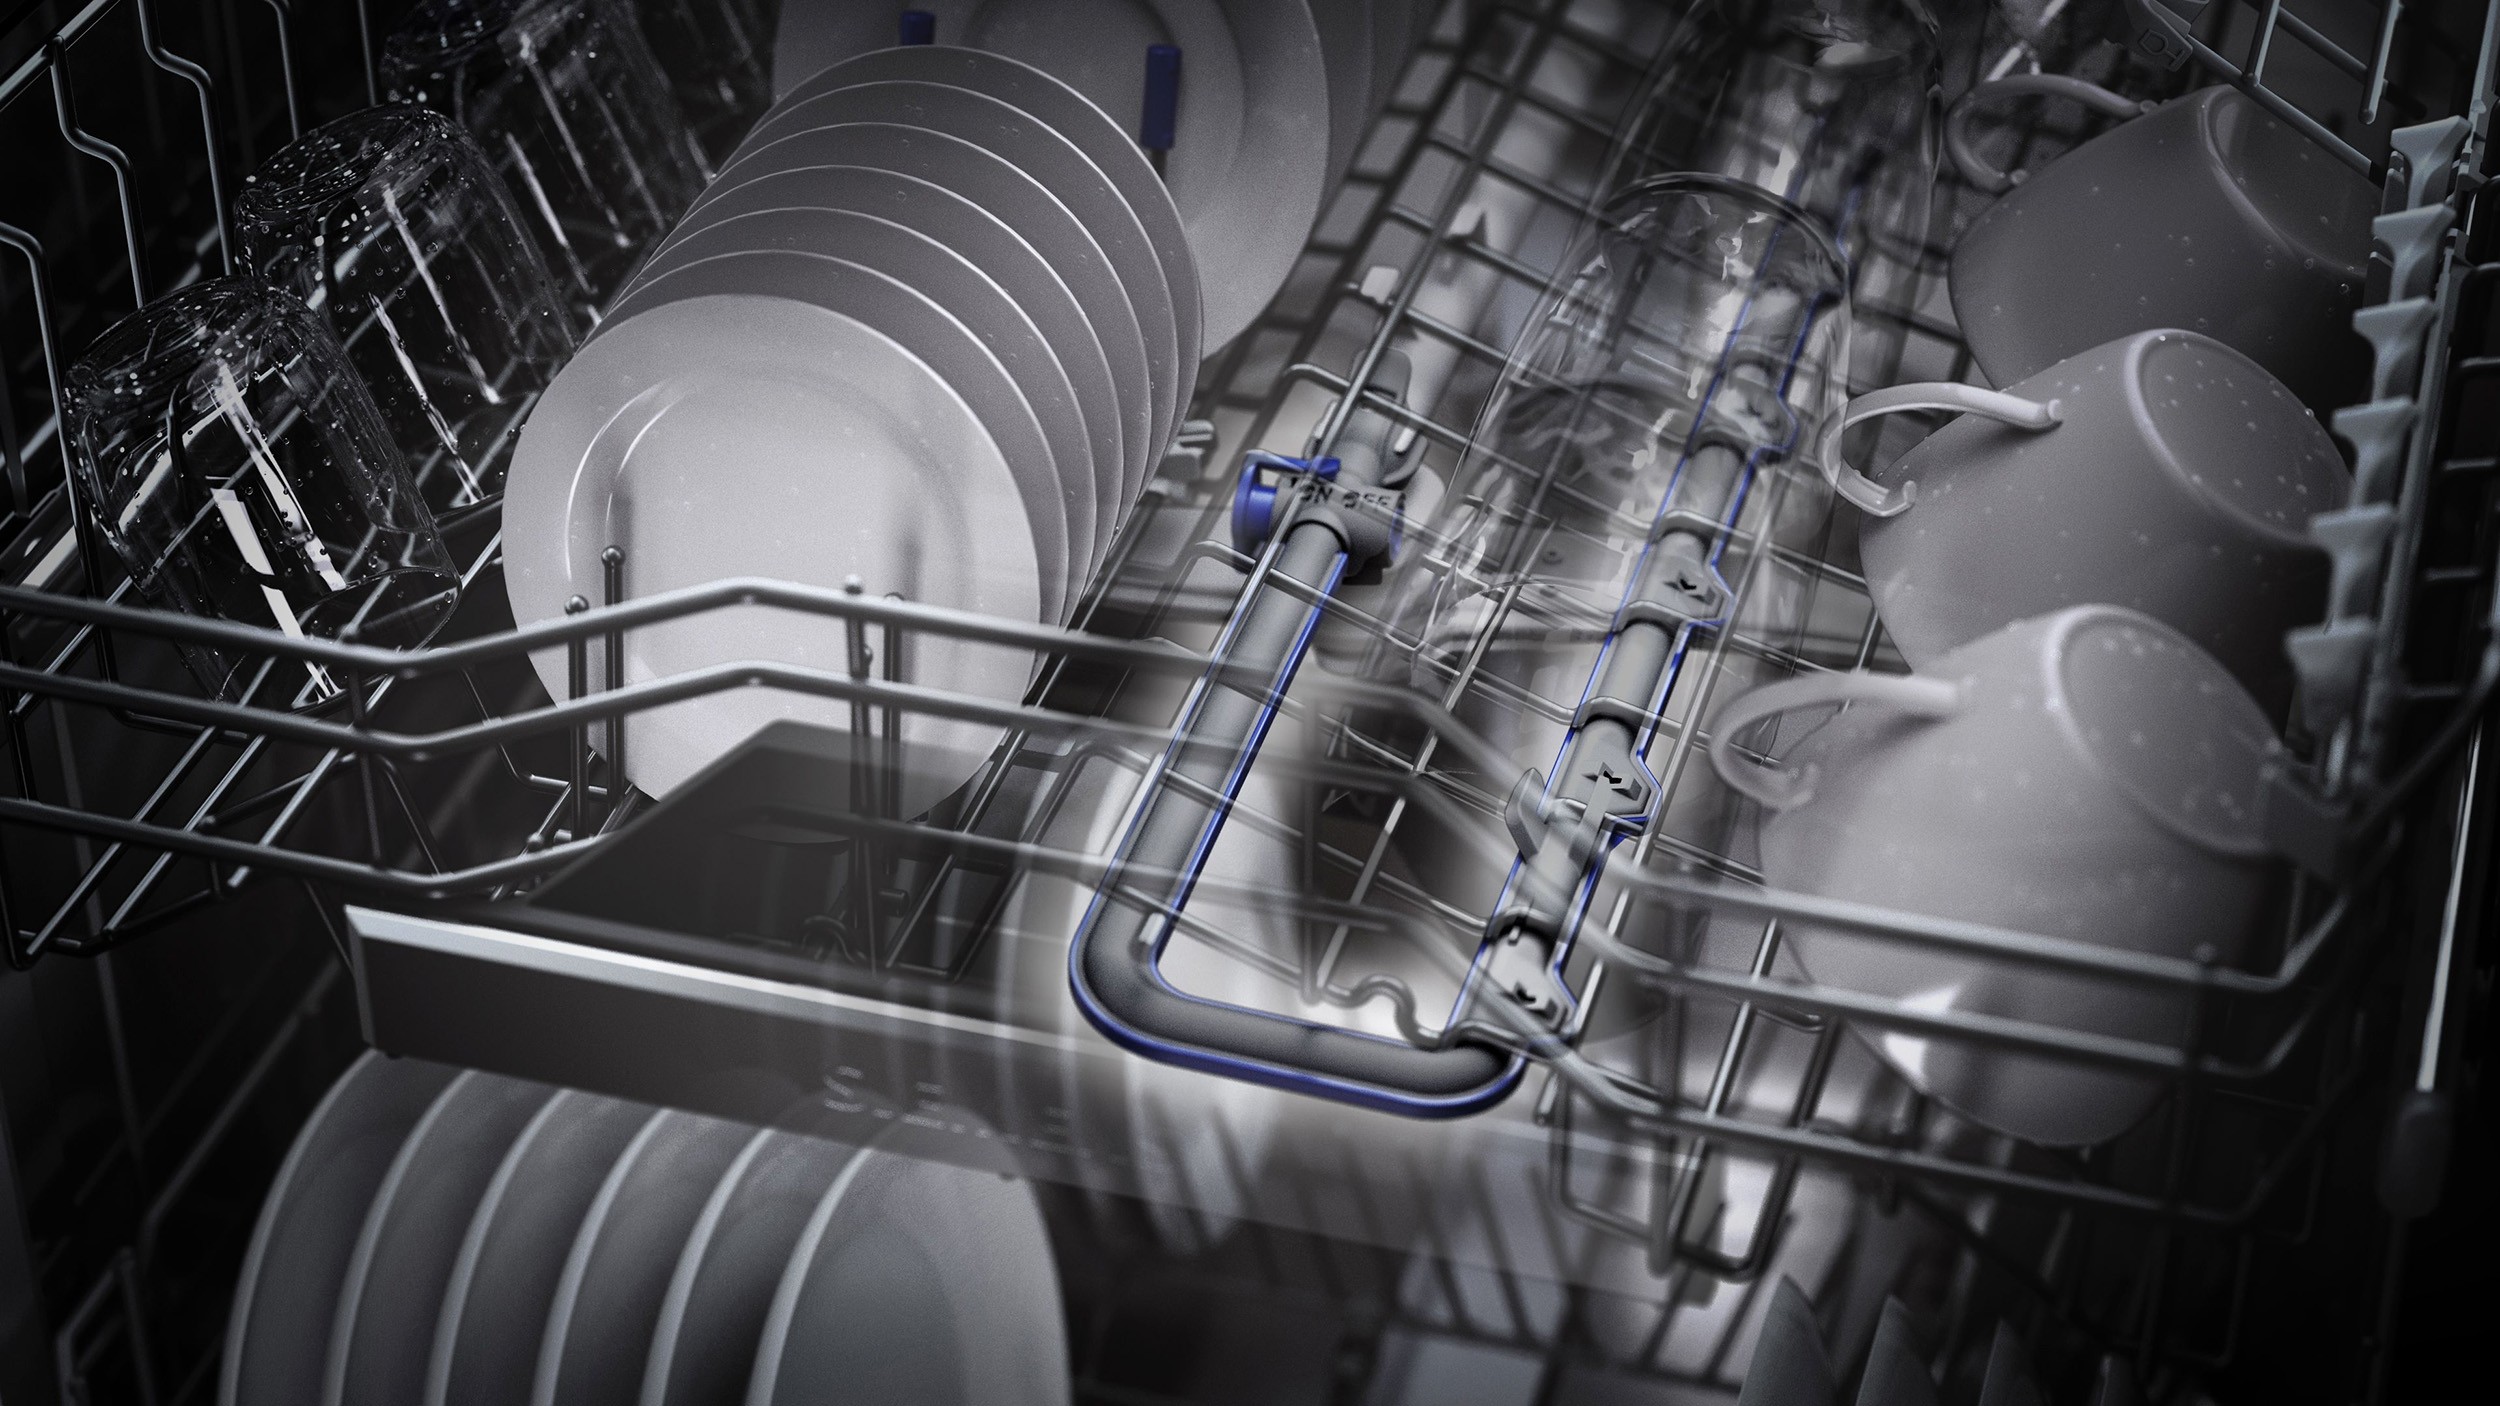 SIEMENS Lave vaisselle integrable 60 cm  - SN55EB11CE